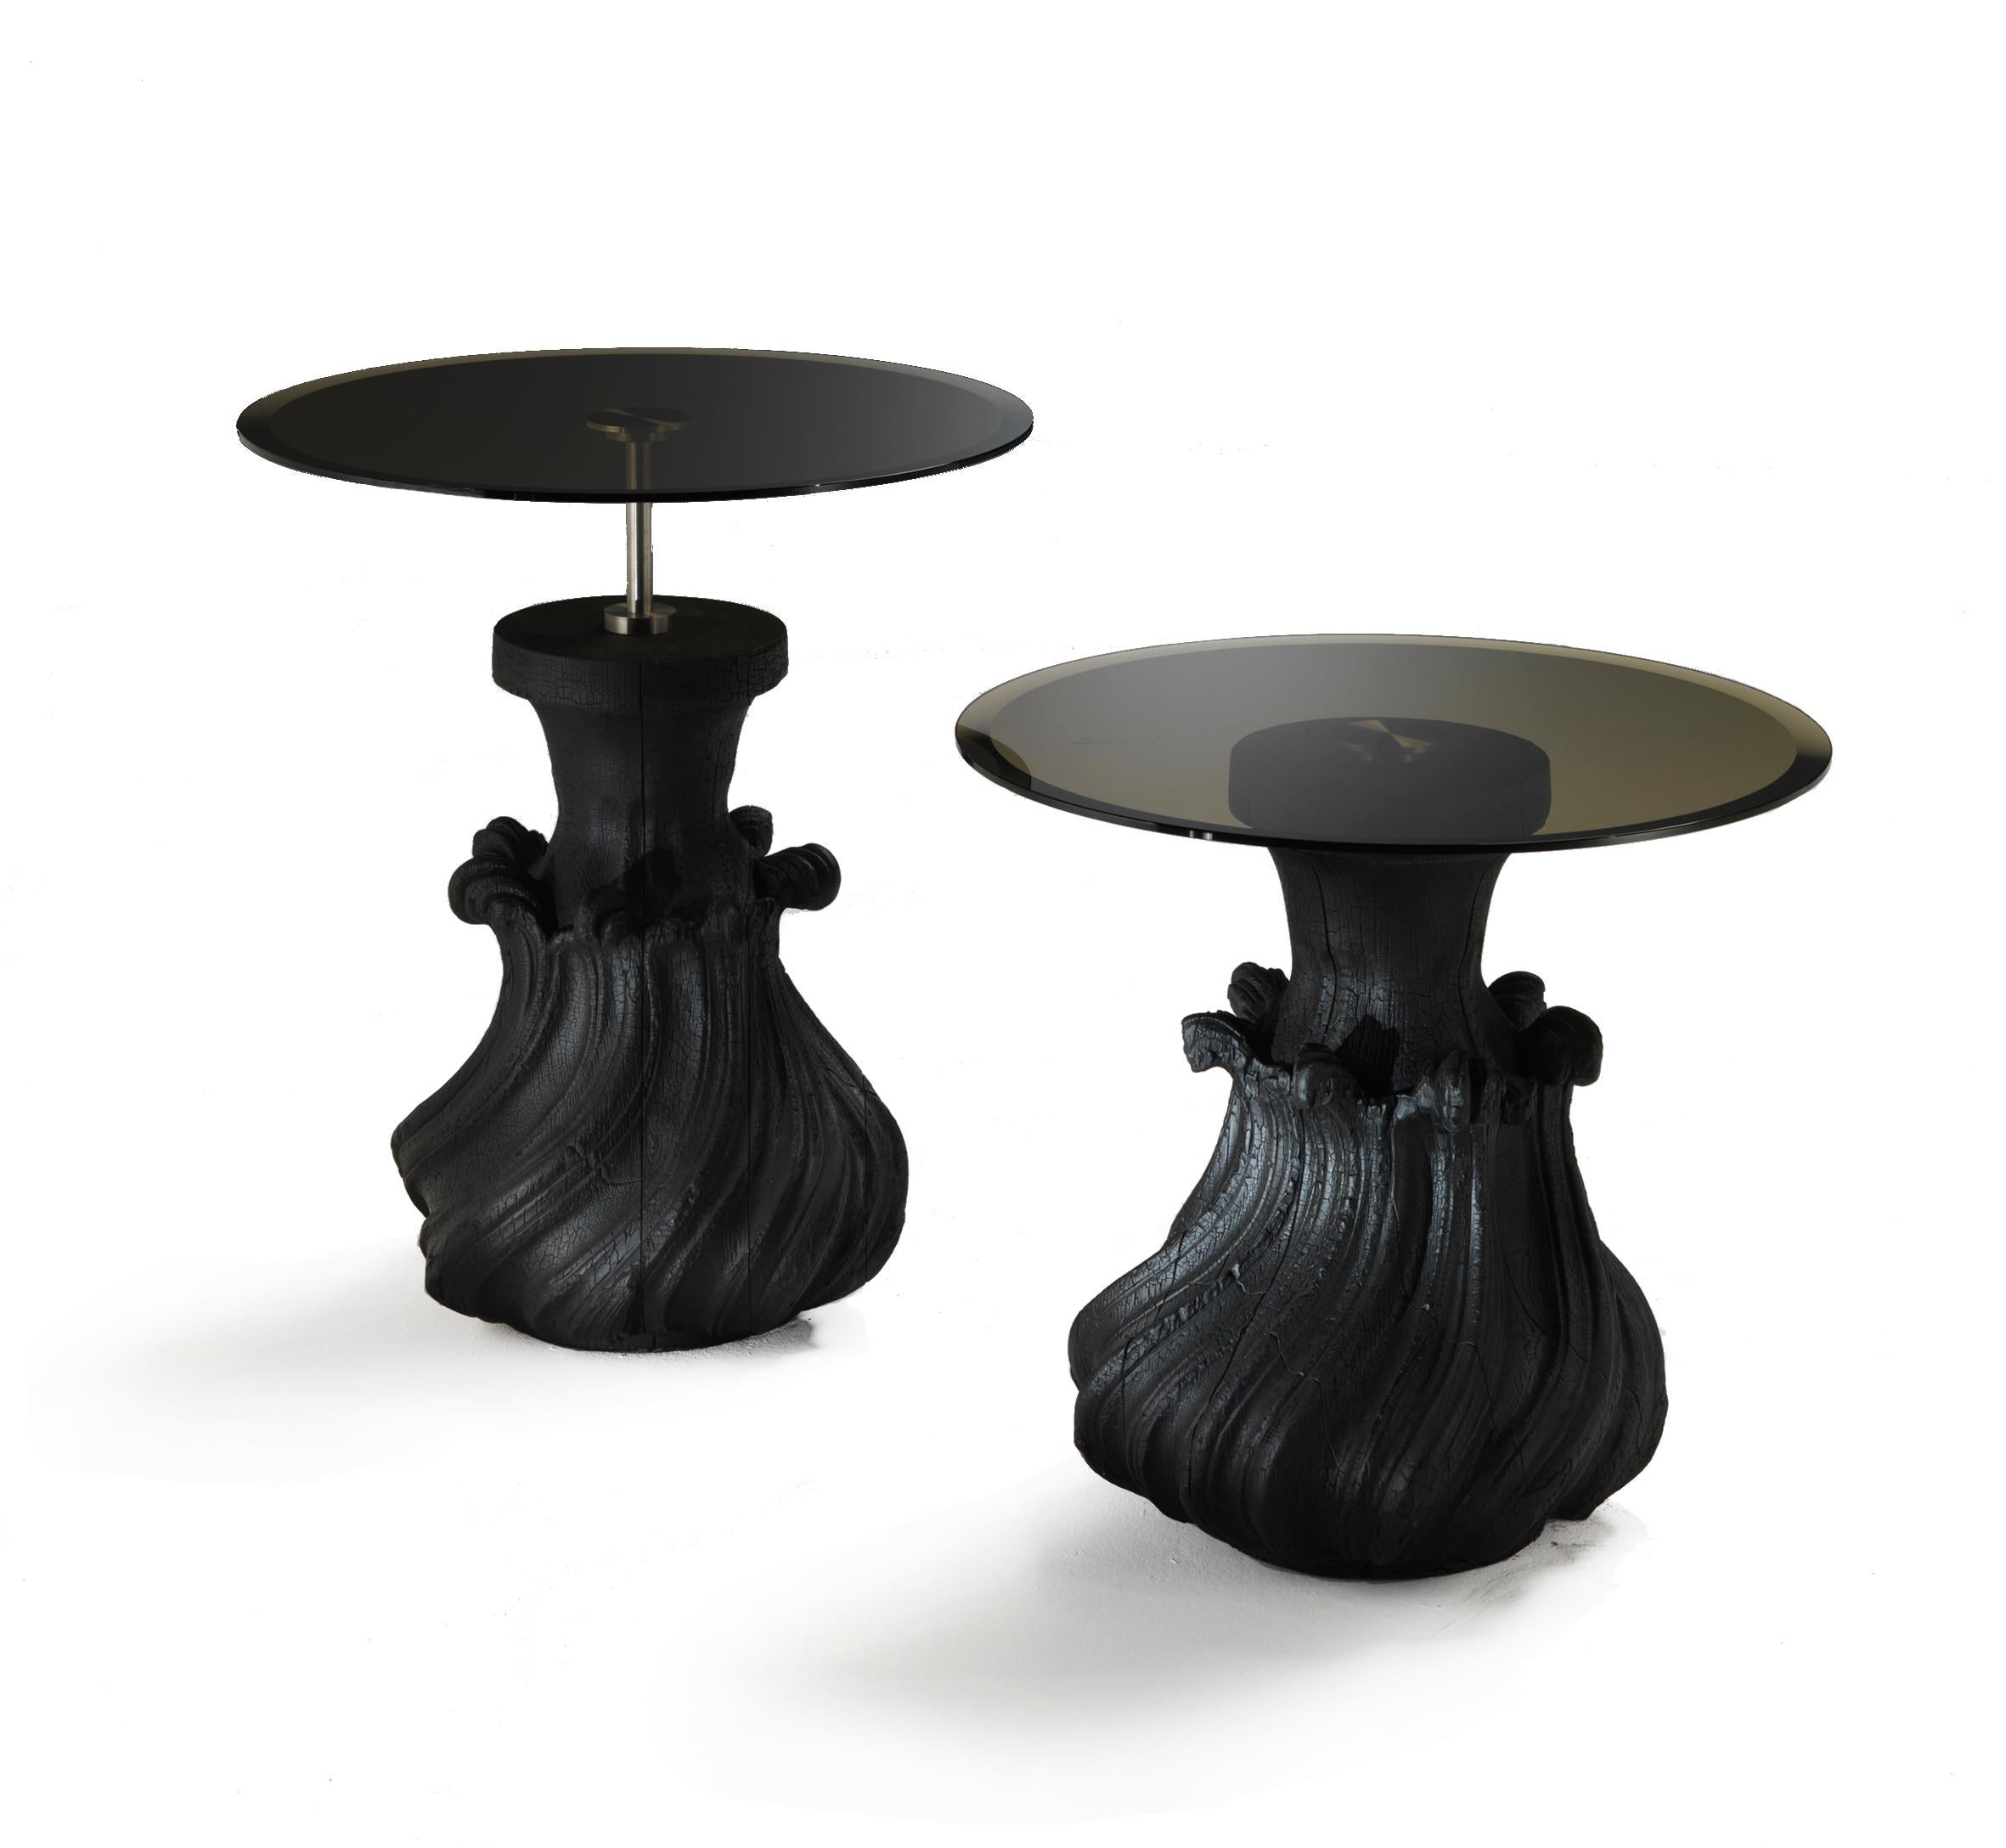 
Wir stellen den Scoubidou Cocktailtisch vor, eine Kreation des Visionärs Nigel Coates, die über das Gewöhnliche hinausgeht. Dieser Tisch ist nicht nur ein Möbelstück, sondern ein Kunstwerk, das Handwerkskunst und zeitgenössisches Design nahtlos